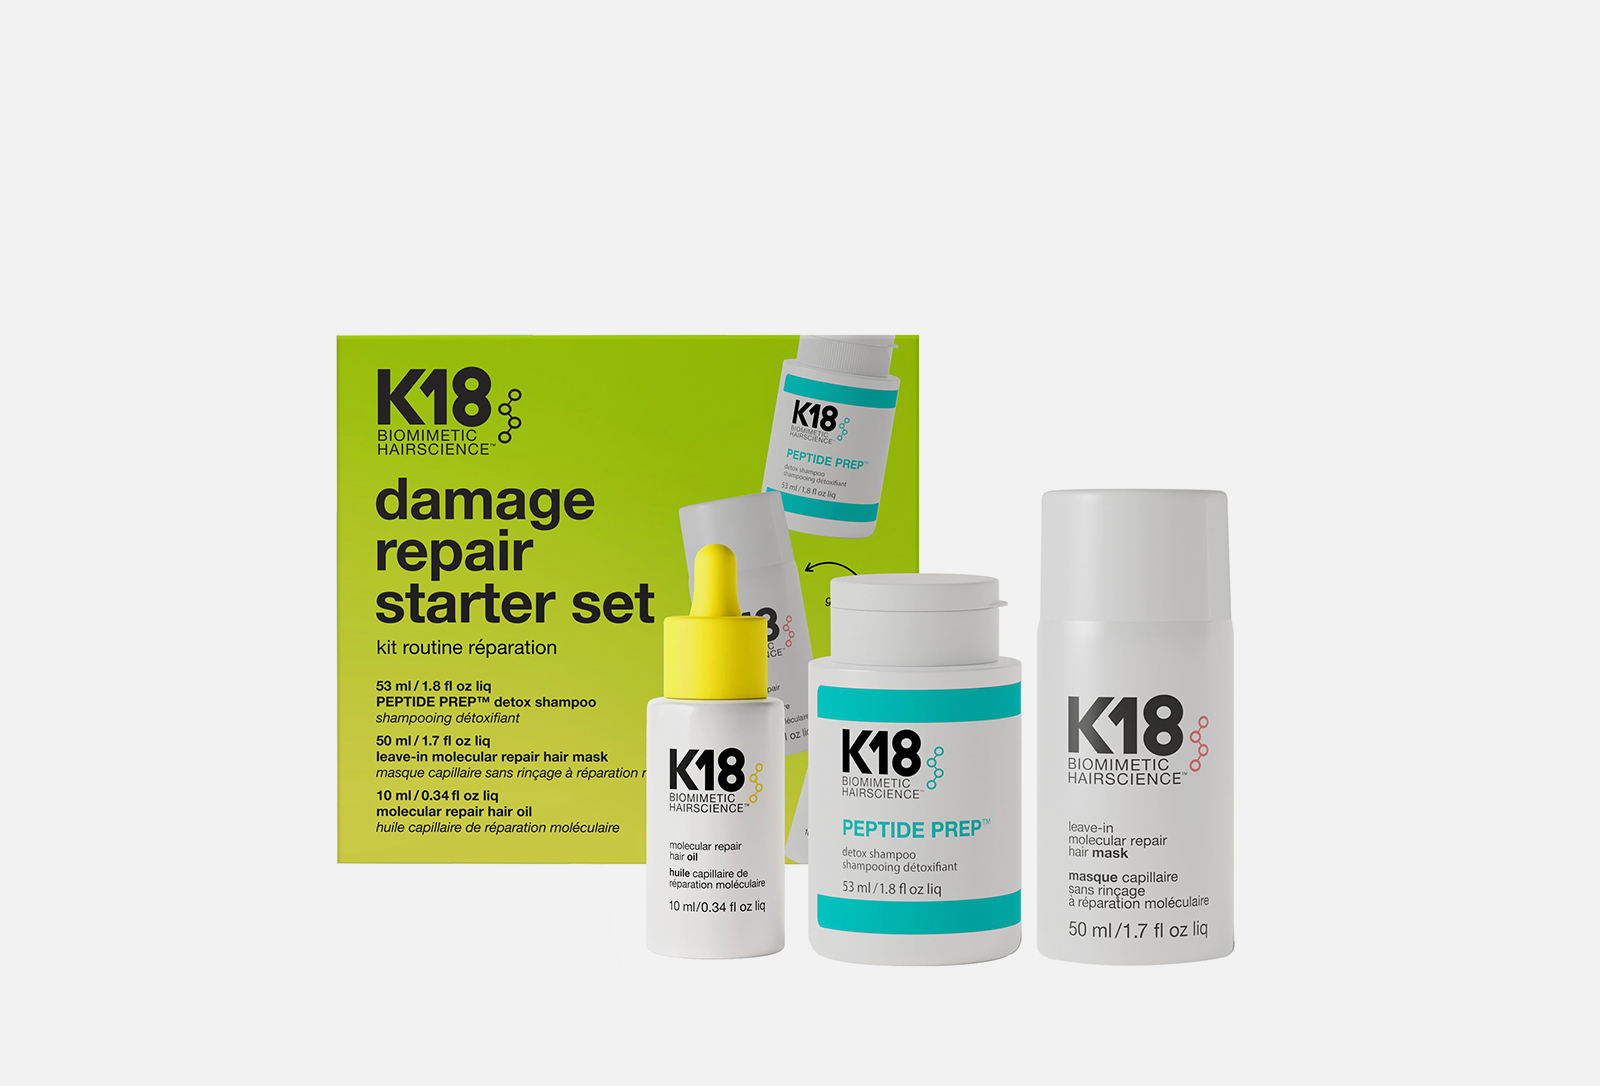 K18 Набор для волос Damage Repair Starter Set 1 шт — купить в Москве